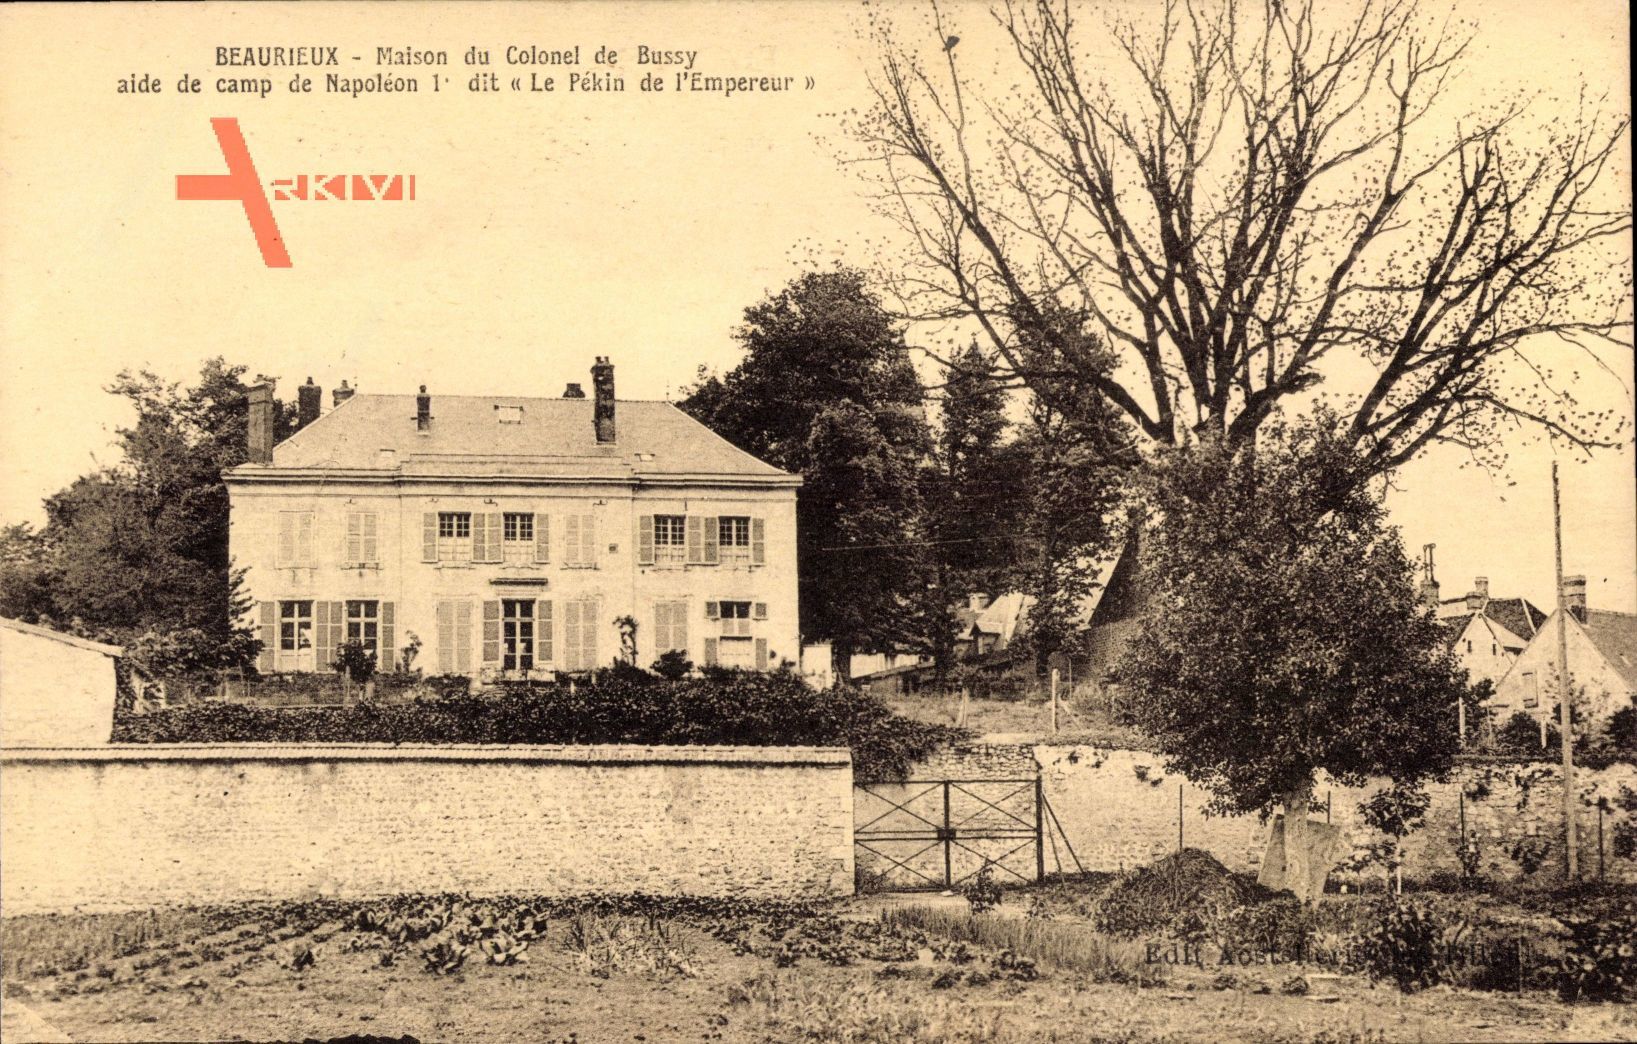 Beaurieux Aisne, Maison du Colonel de Bussy aide de camp de Napoleon